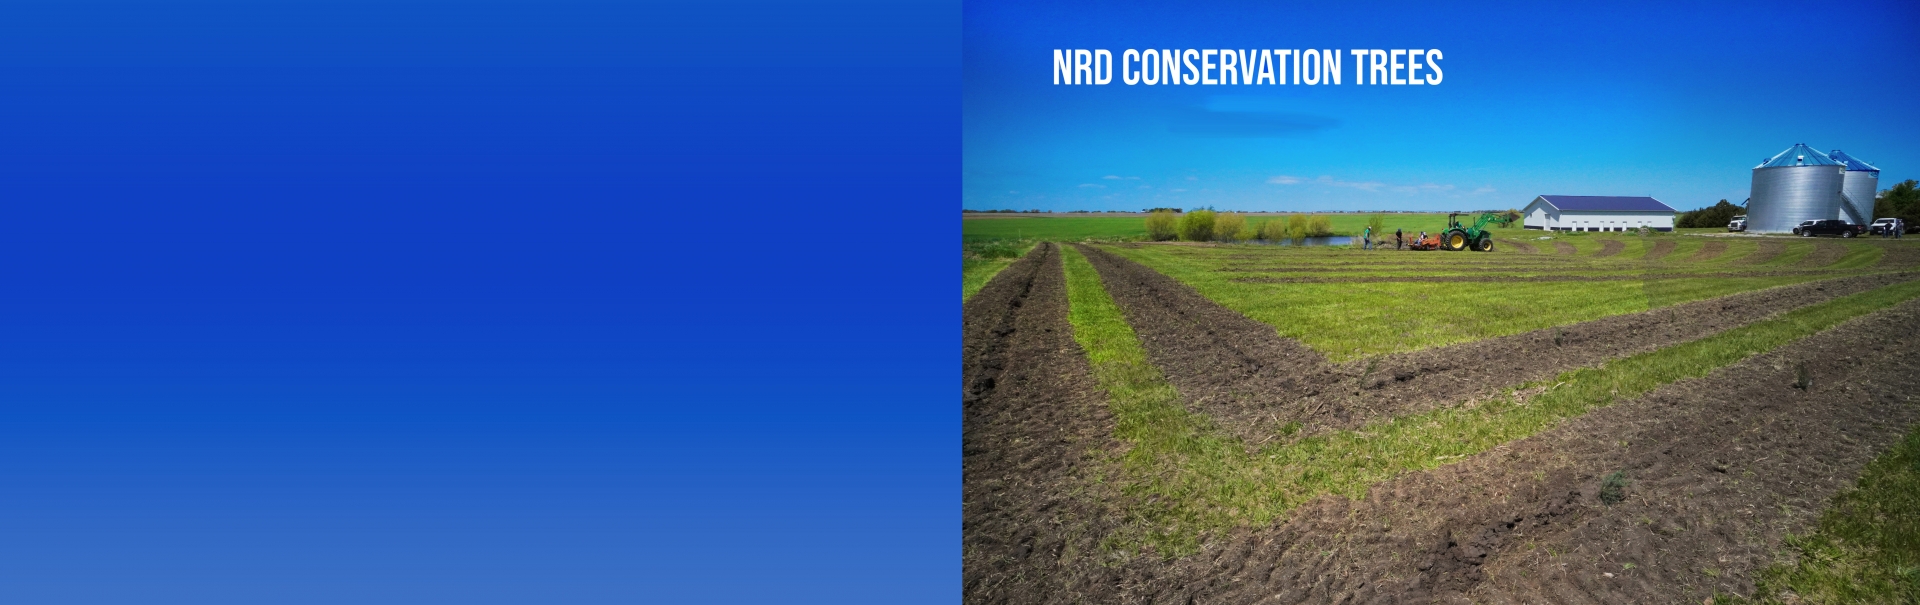 NRD Conservation Trees Slide